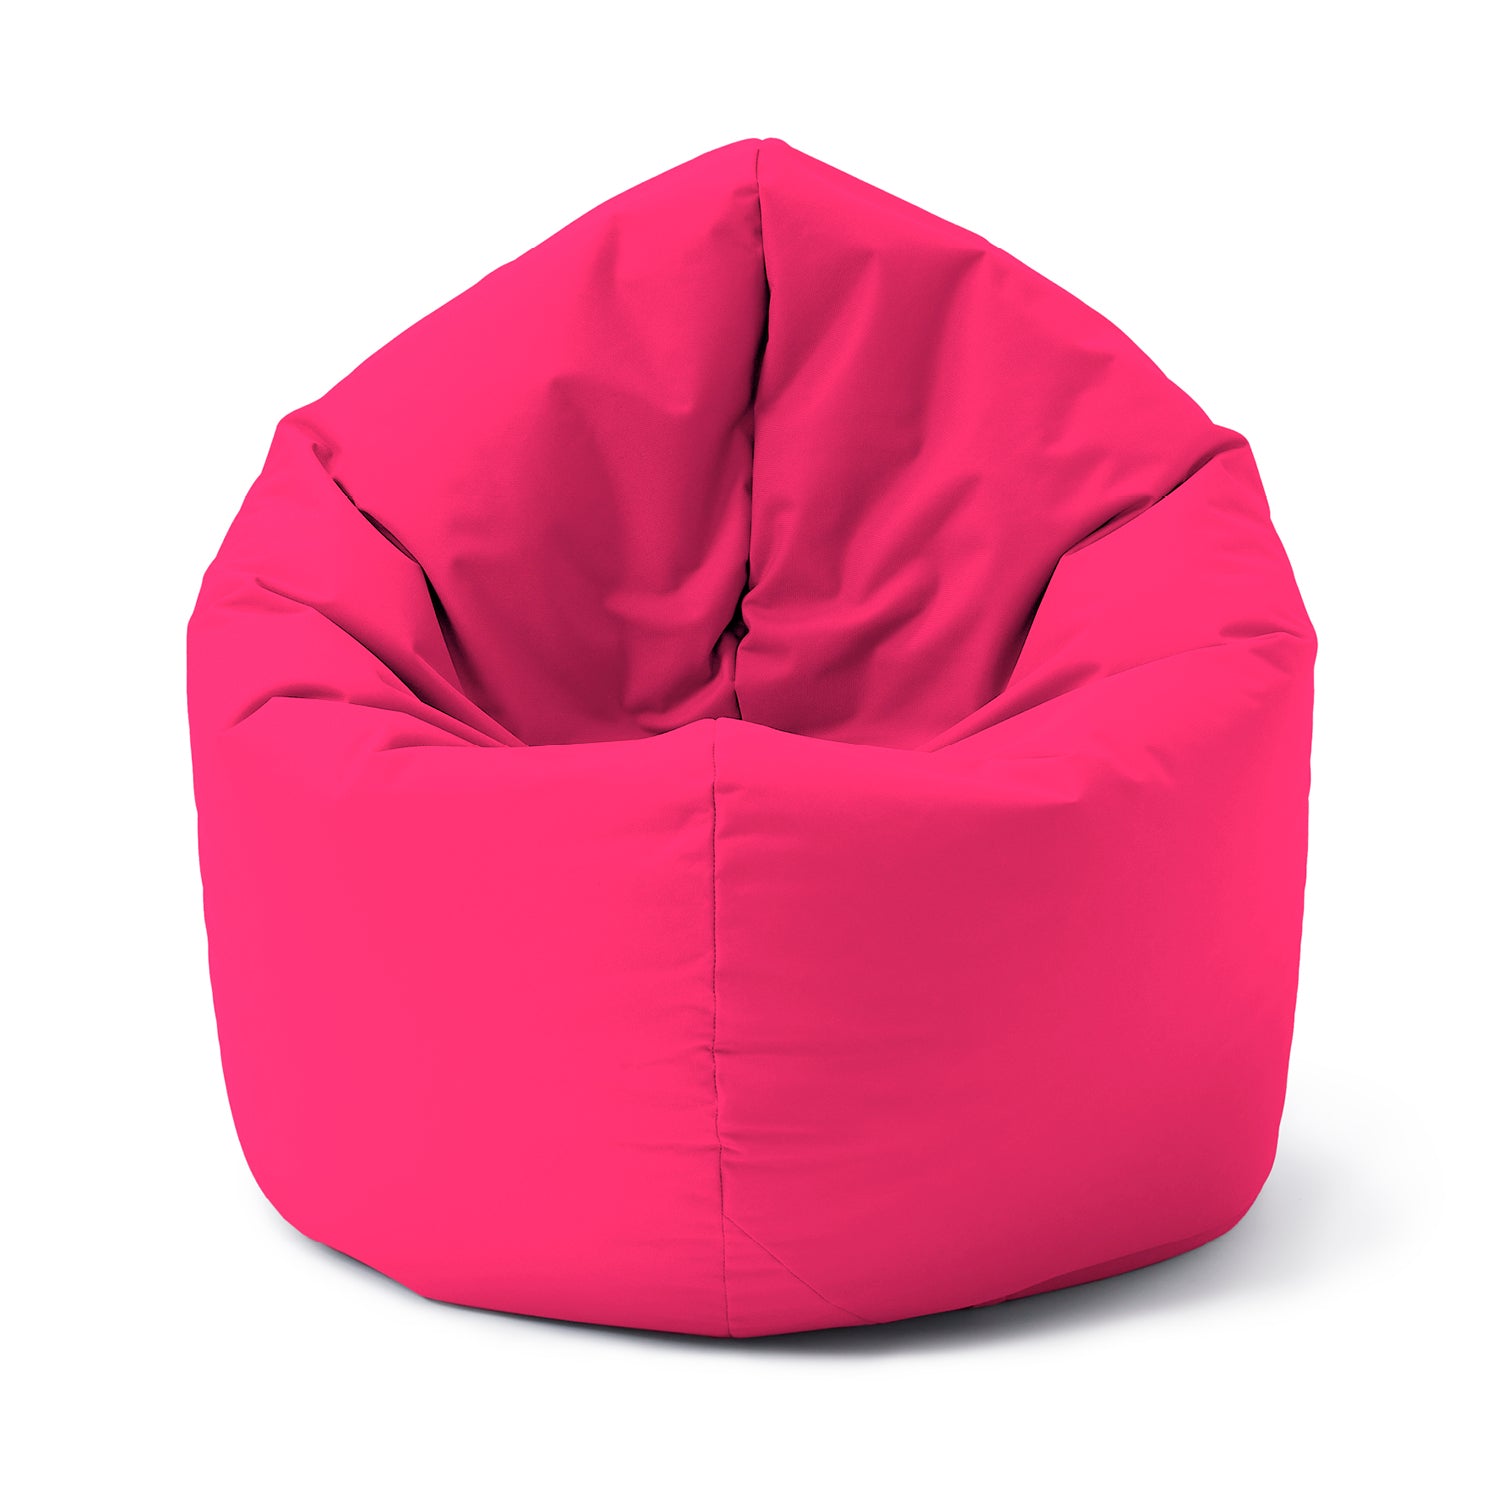 Sitzsack Drops (300 L) - In- & outdoor - Pink